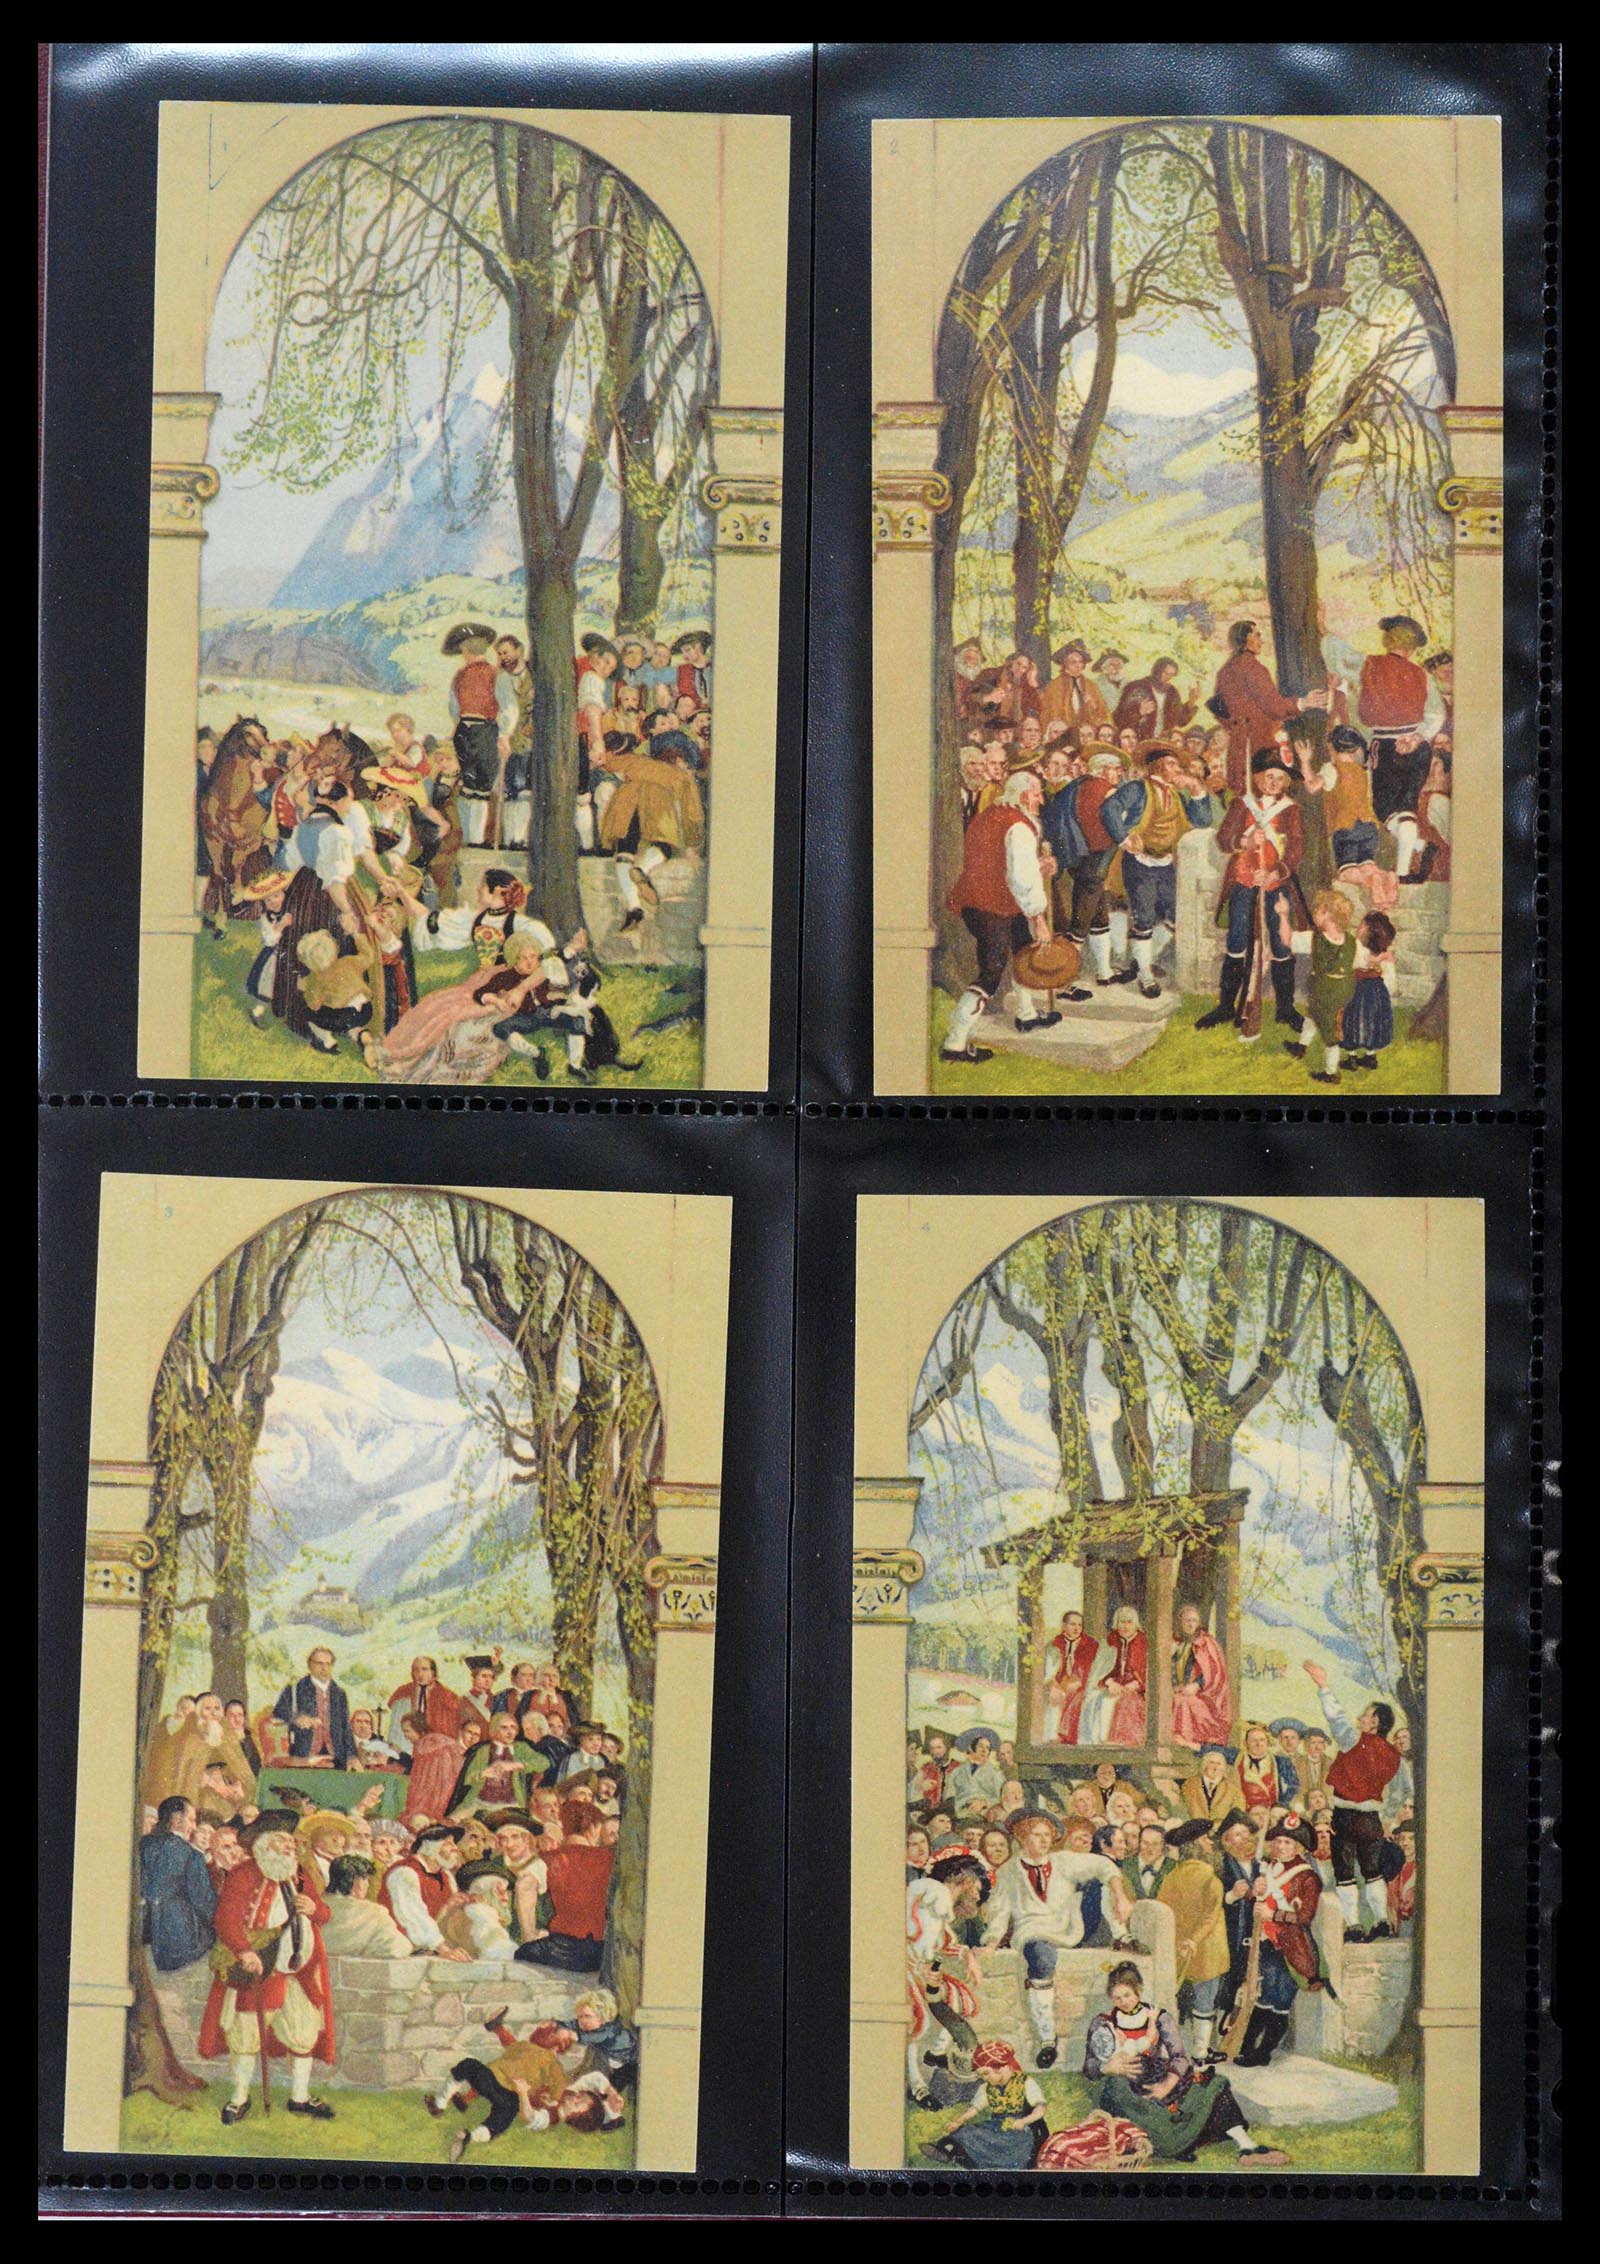 39433 0006 - Stamp collection 39433 Switzerland Bundesfeier cards 1910-1937.